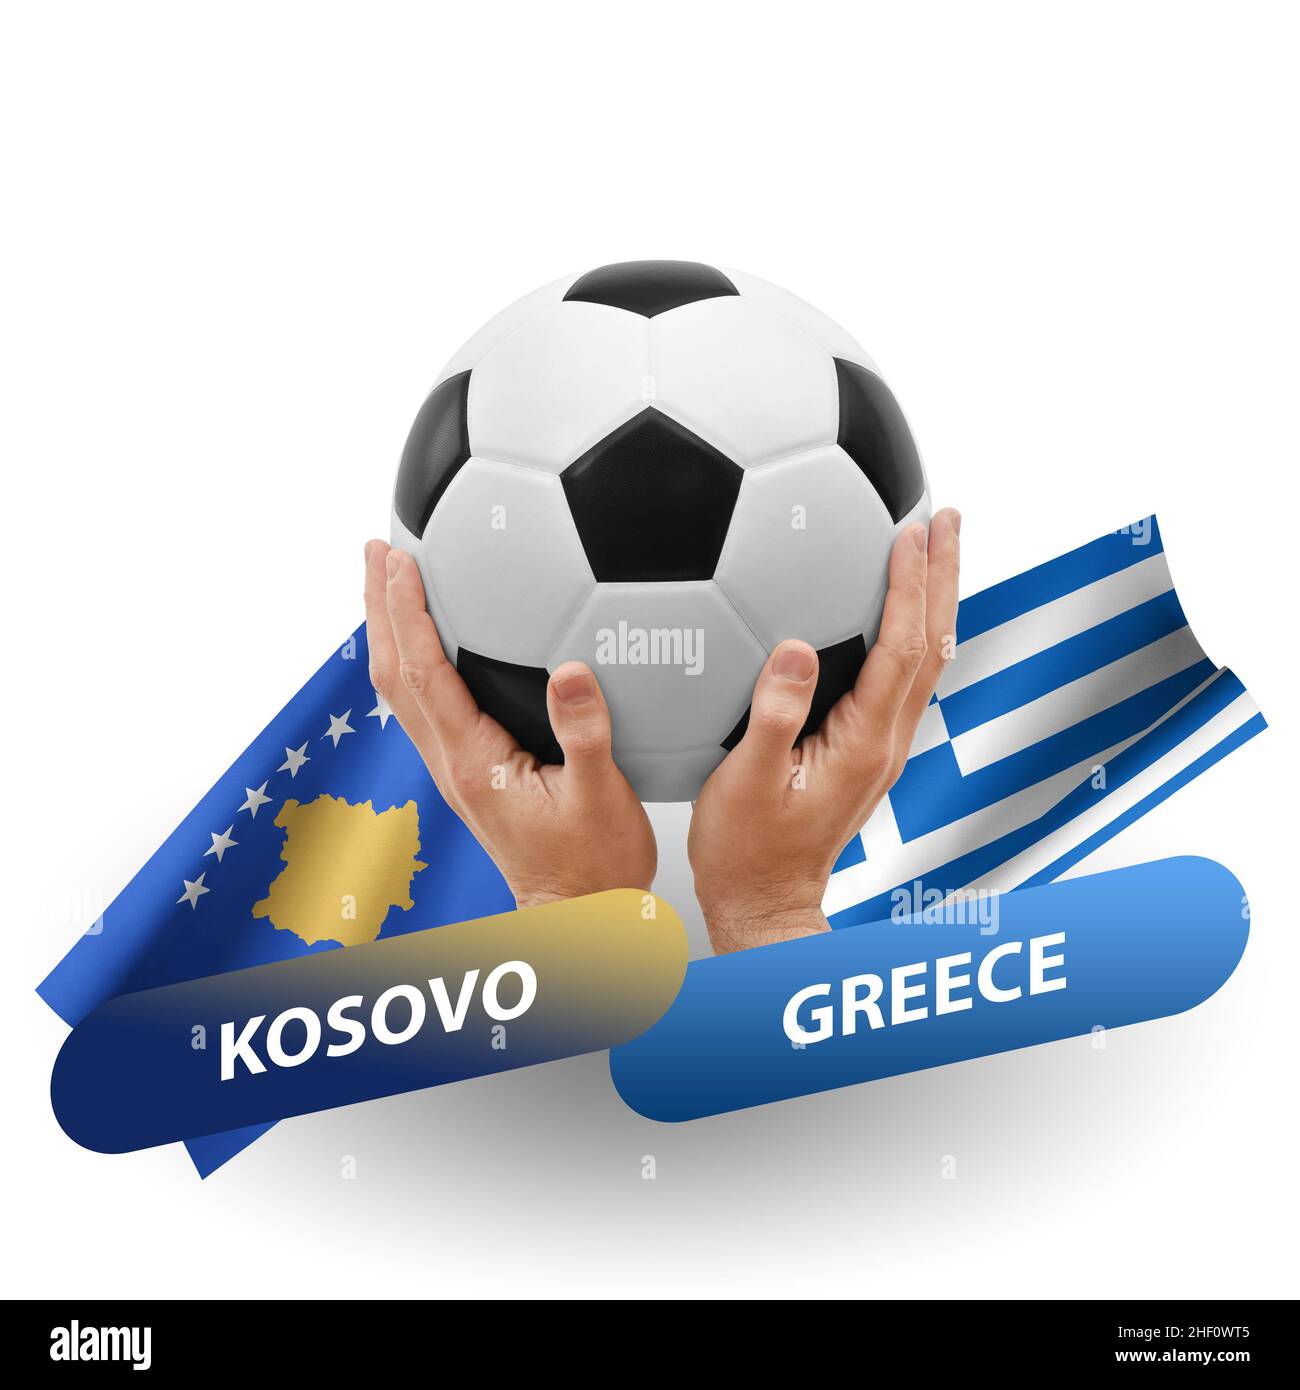 Fußballspiel, Nationalmannschaften kosovo gegen griechenland  Stockfotografie - Alamy